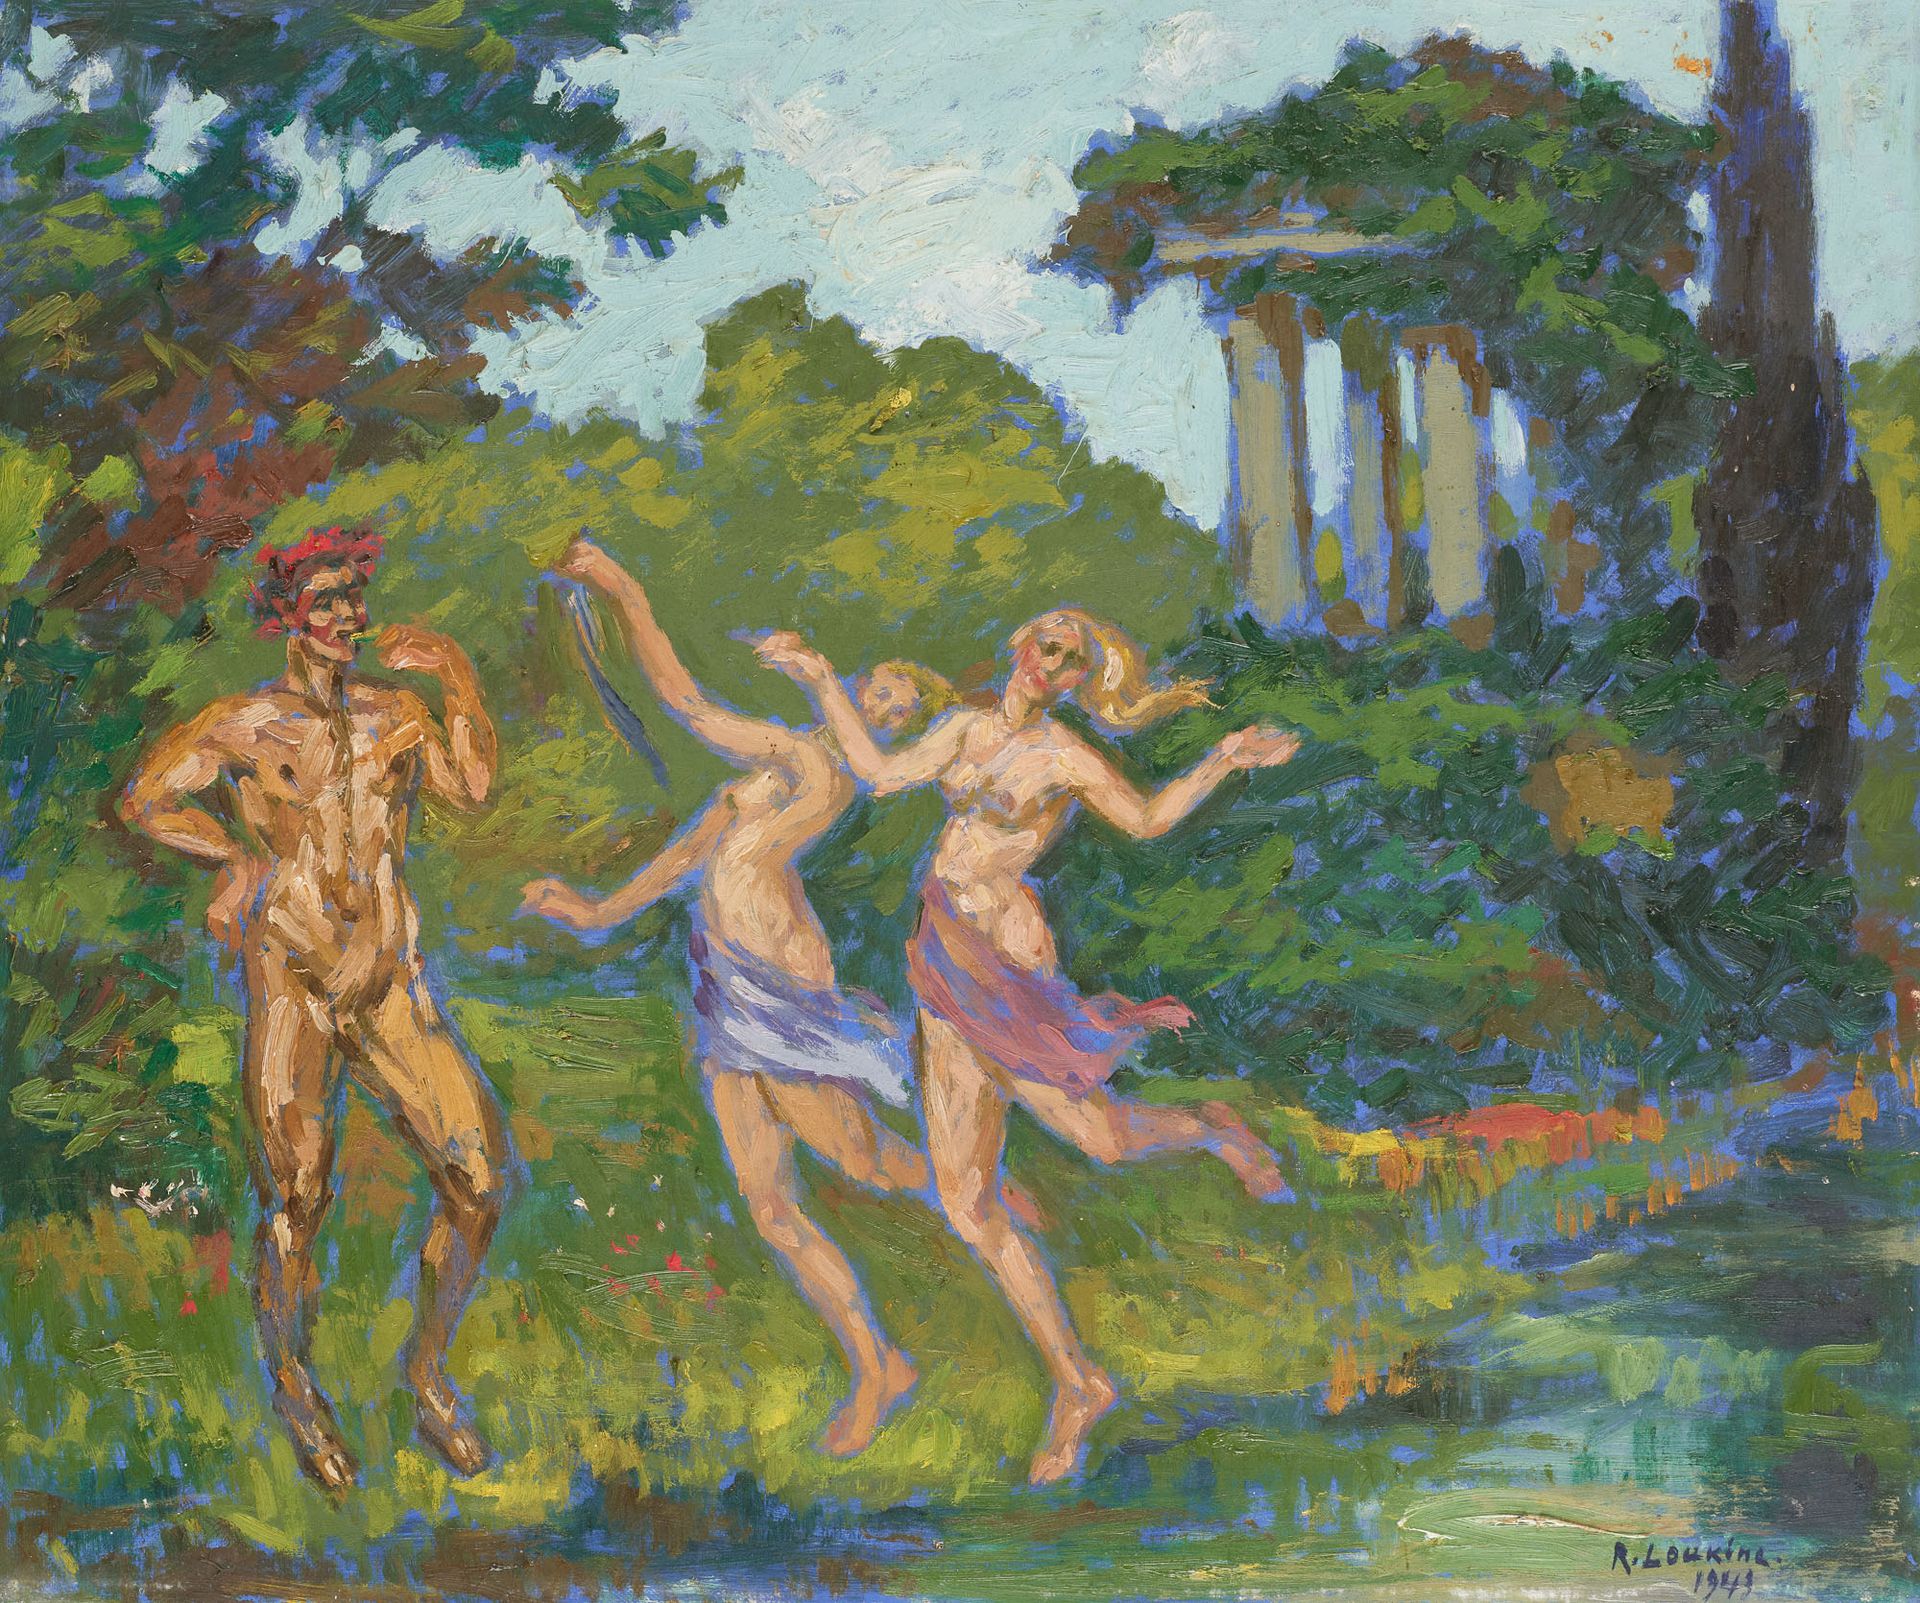 Rostislas LOUKINE École russe (1904-1988) Olio su tela: Muse danzanti e fauno.

&hellip;